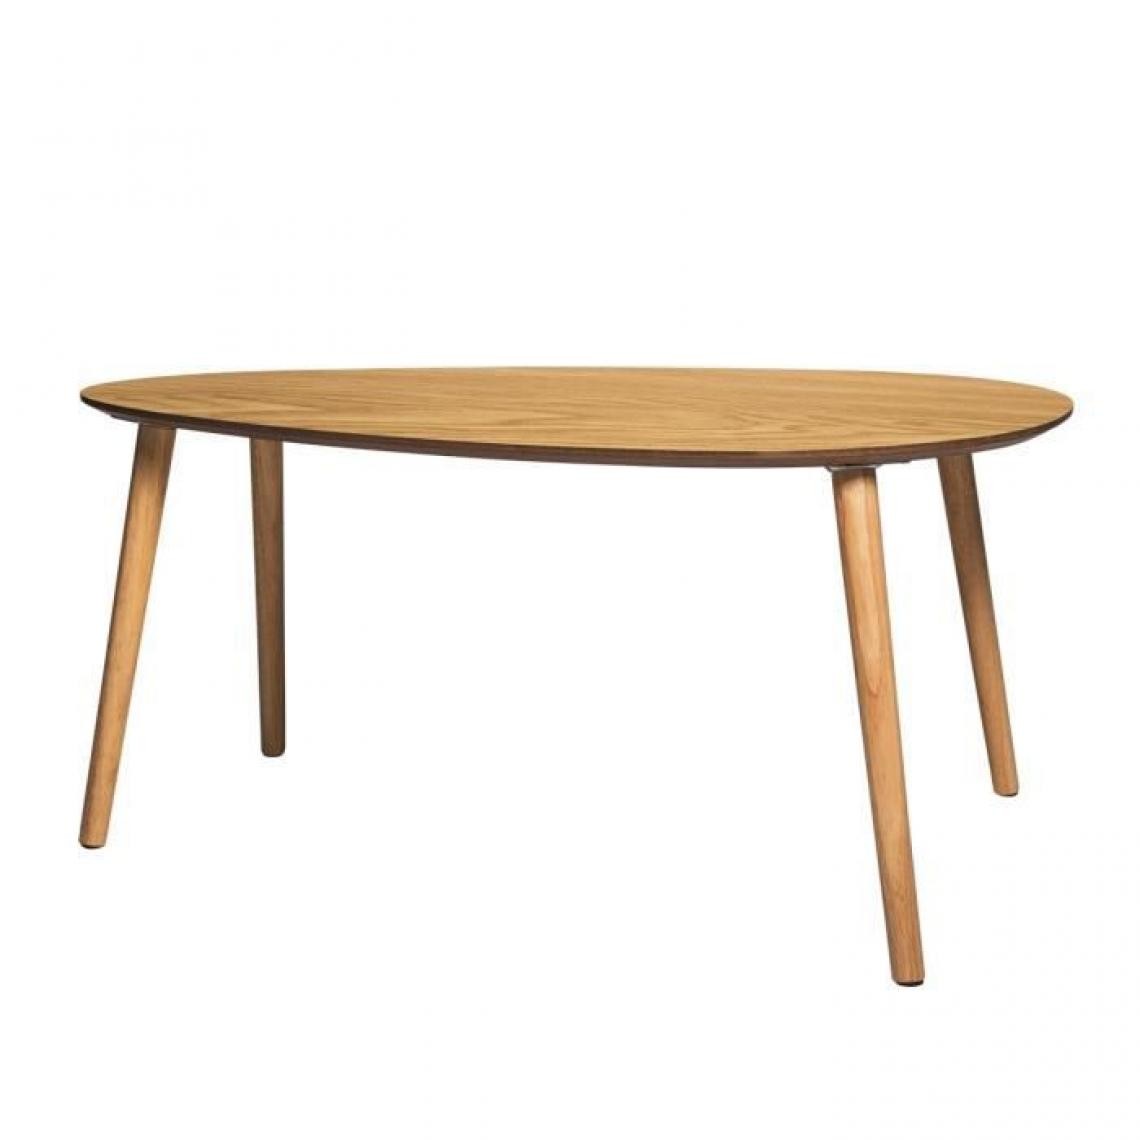 Cstore - Table basse - Imitation bois - Scandinave - L 92cm x P 60cm x H 40 cm - DROP - Tables basses